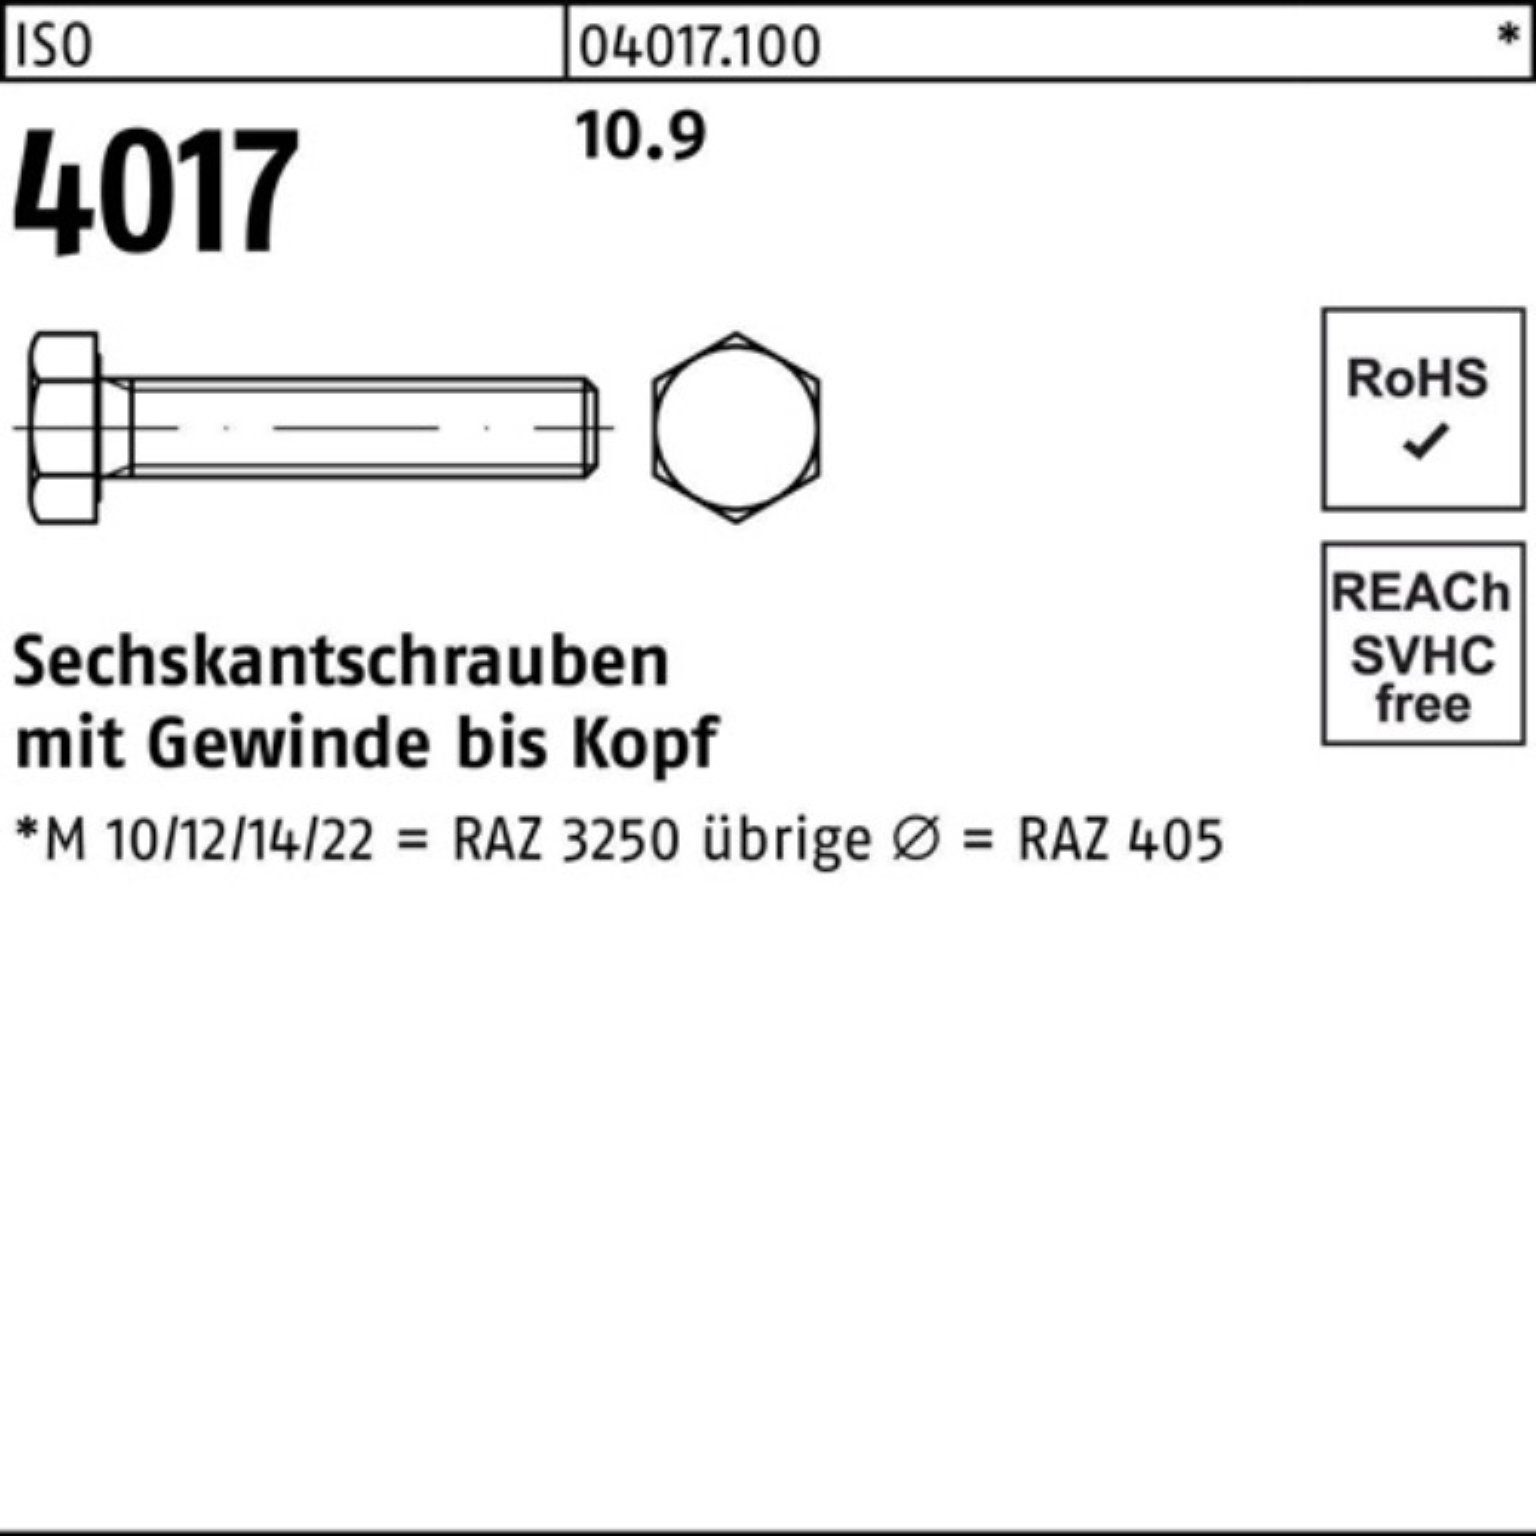 Bufab Sechskantschraube 200er Pack 4017 18 Stück Sechskantschraube 40 10.9 VG 200 M8x ISO ISO